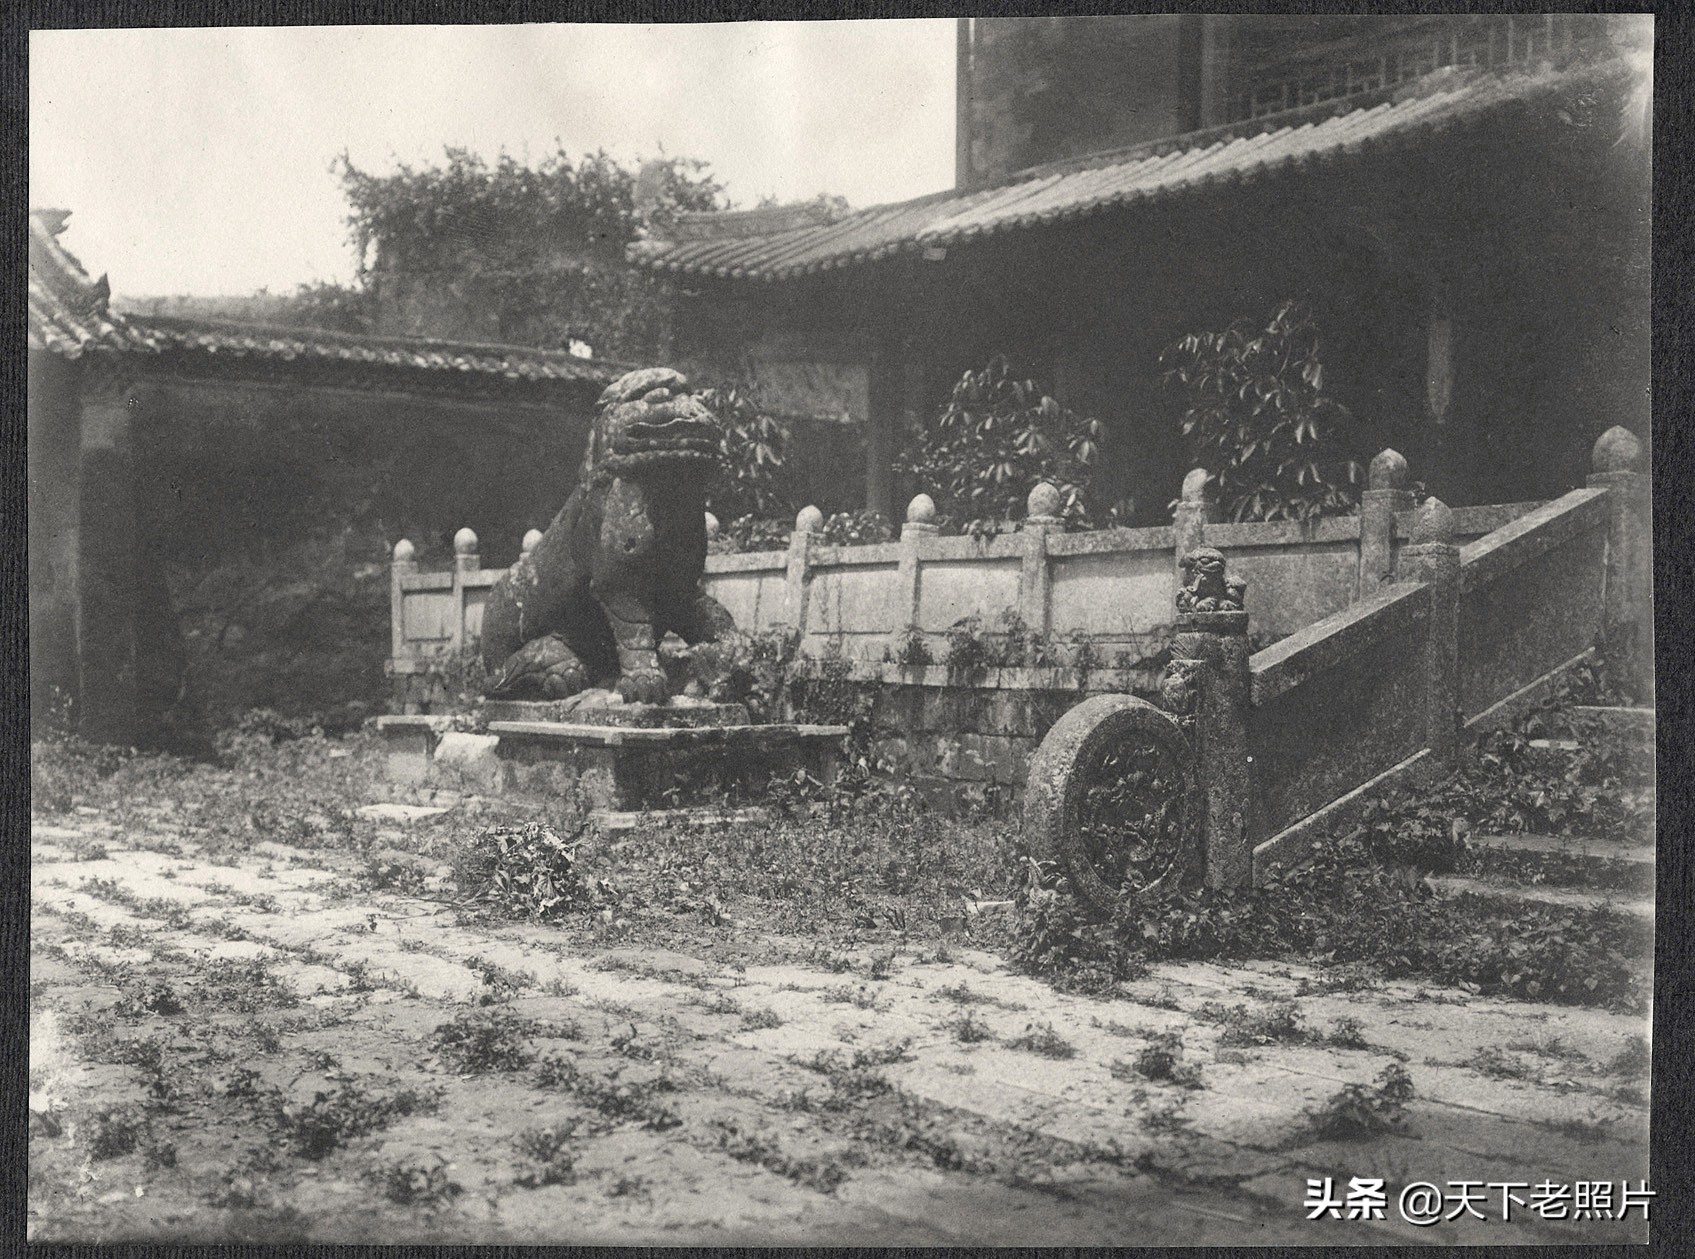 1905年的广州照 美国政府代表团访华时随行拍摄